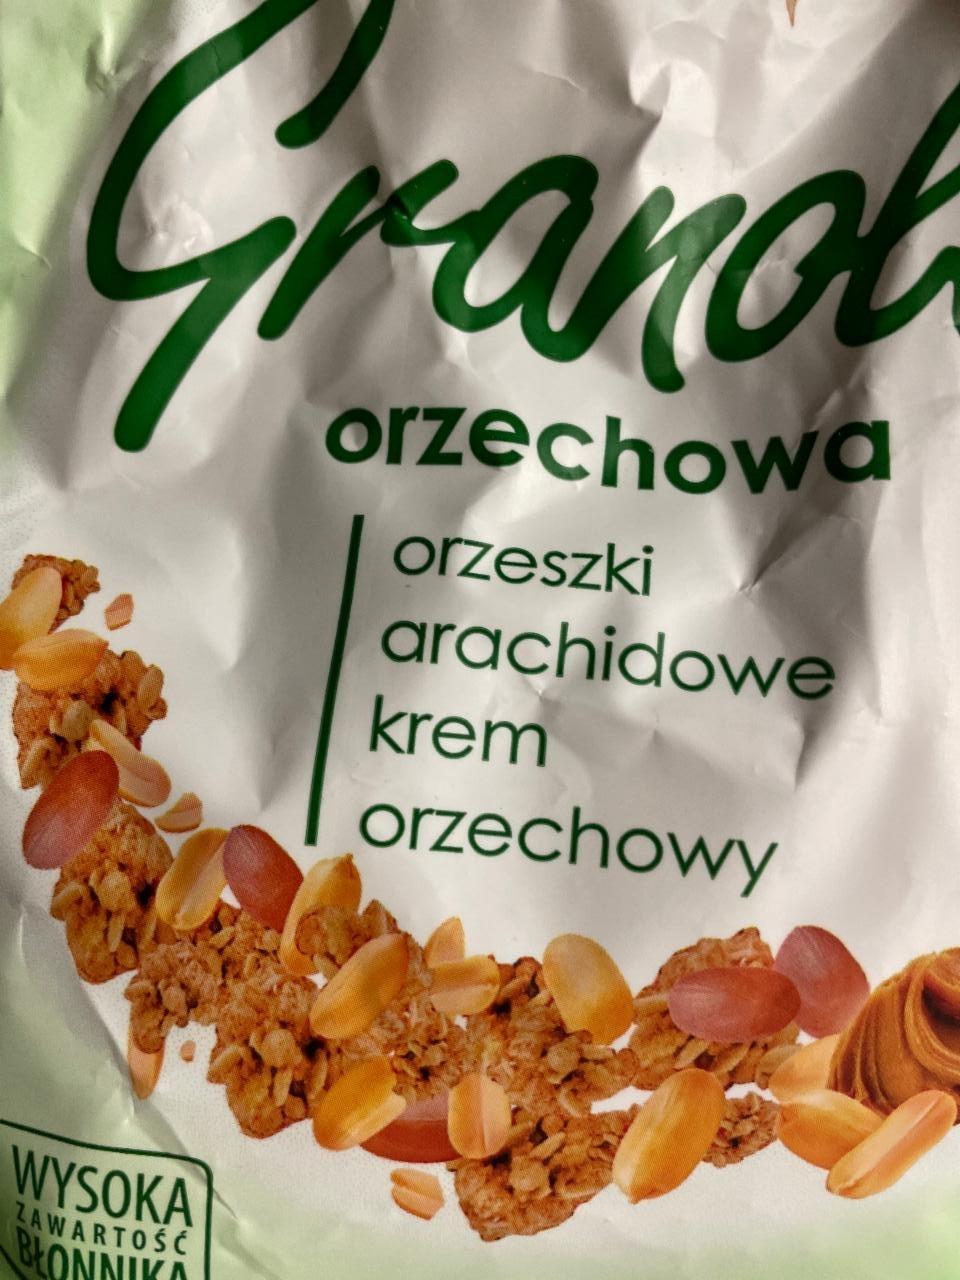 Zdjęcia - Granola orzechowa Orzeszki arachidowe krem orzechowy Sante